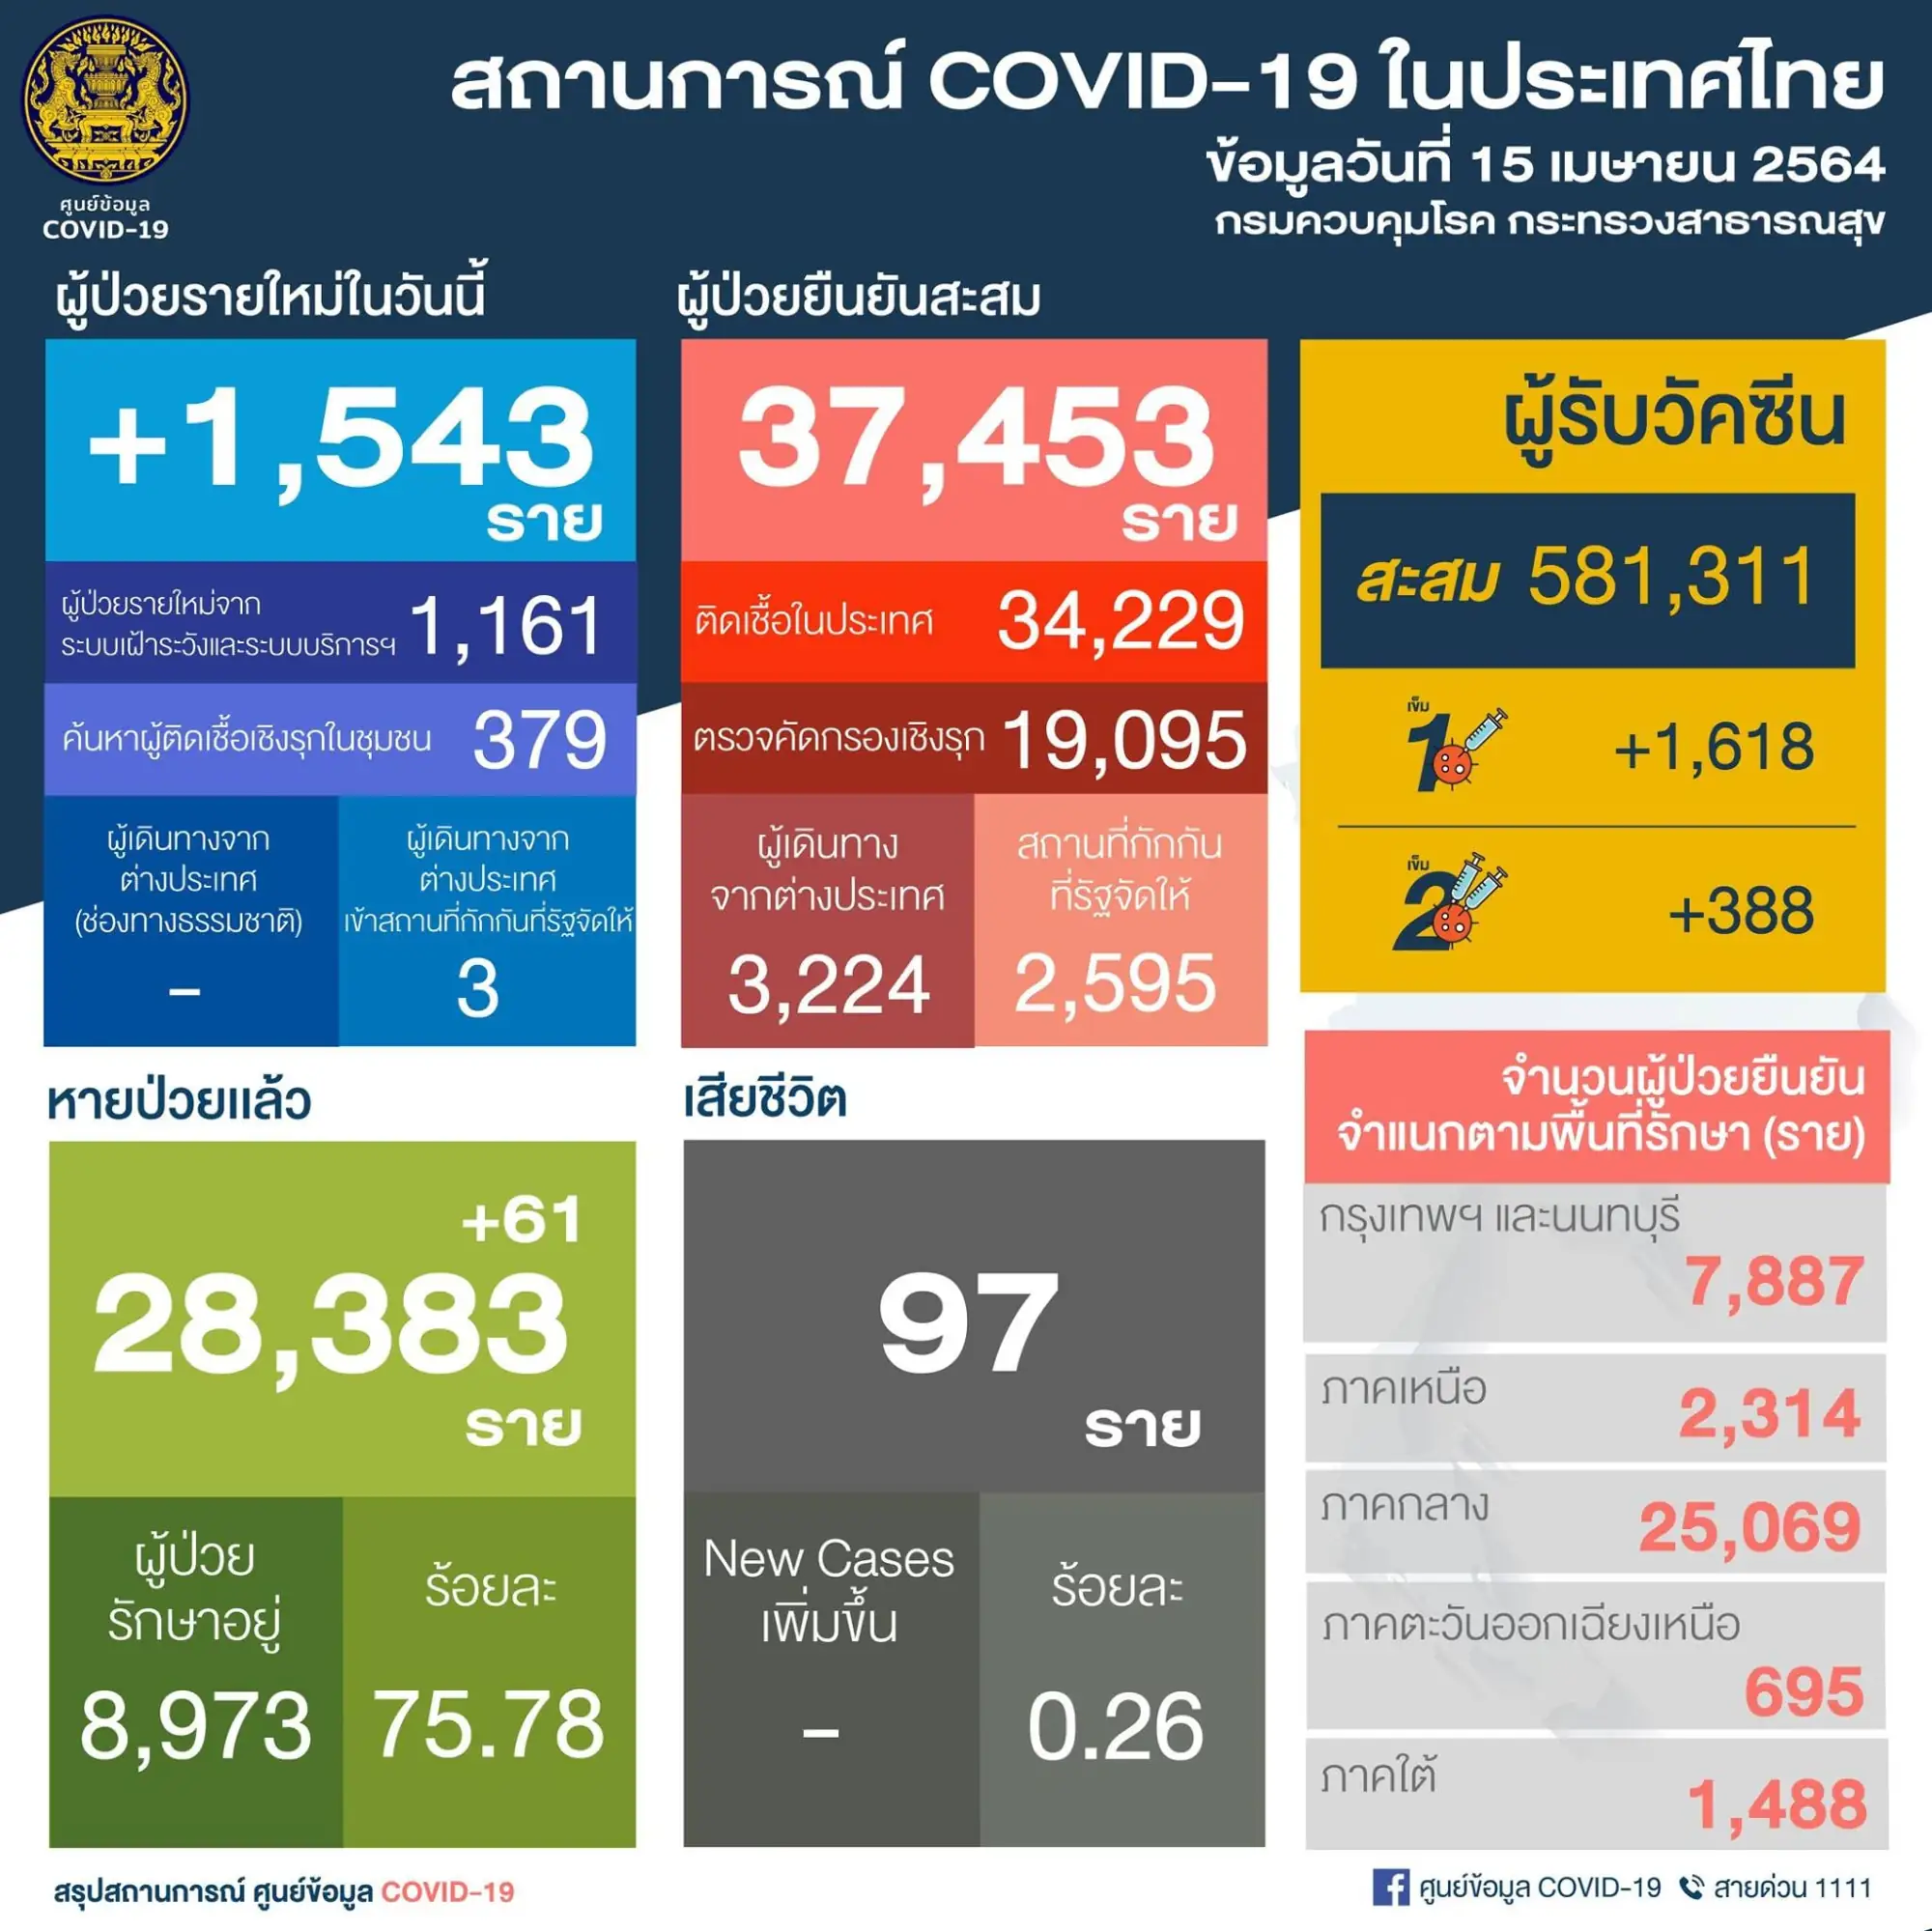 泰国疫情4月15日新增1,543例确诊 （图片来源：PR Thai Government 脸书粉丝专页）